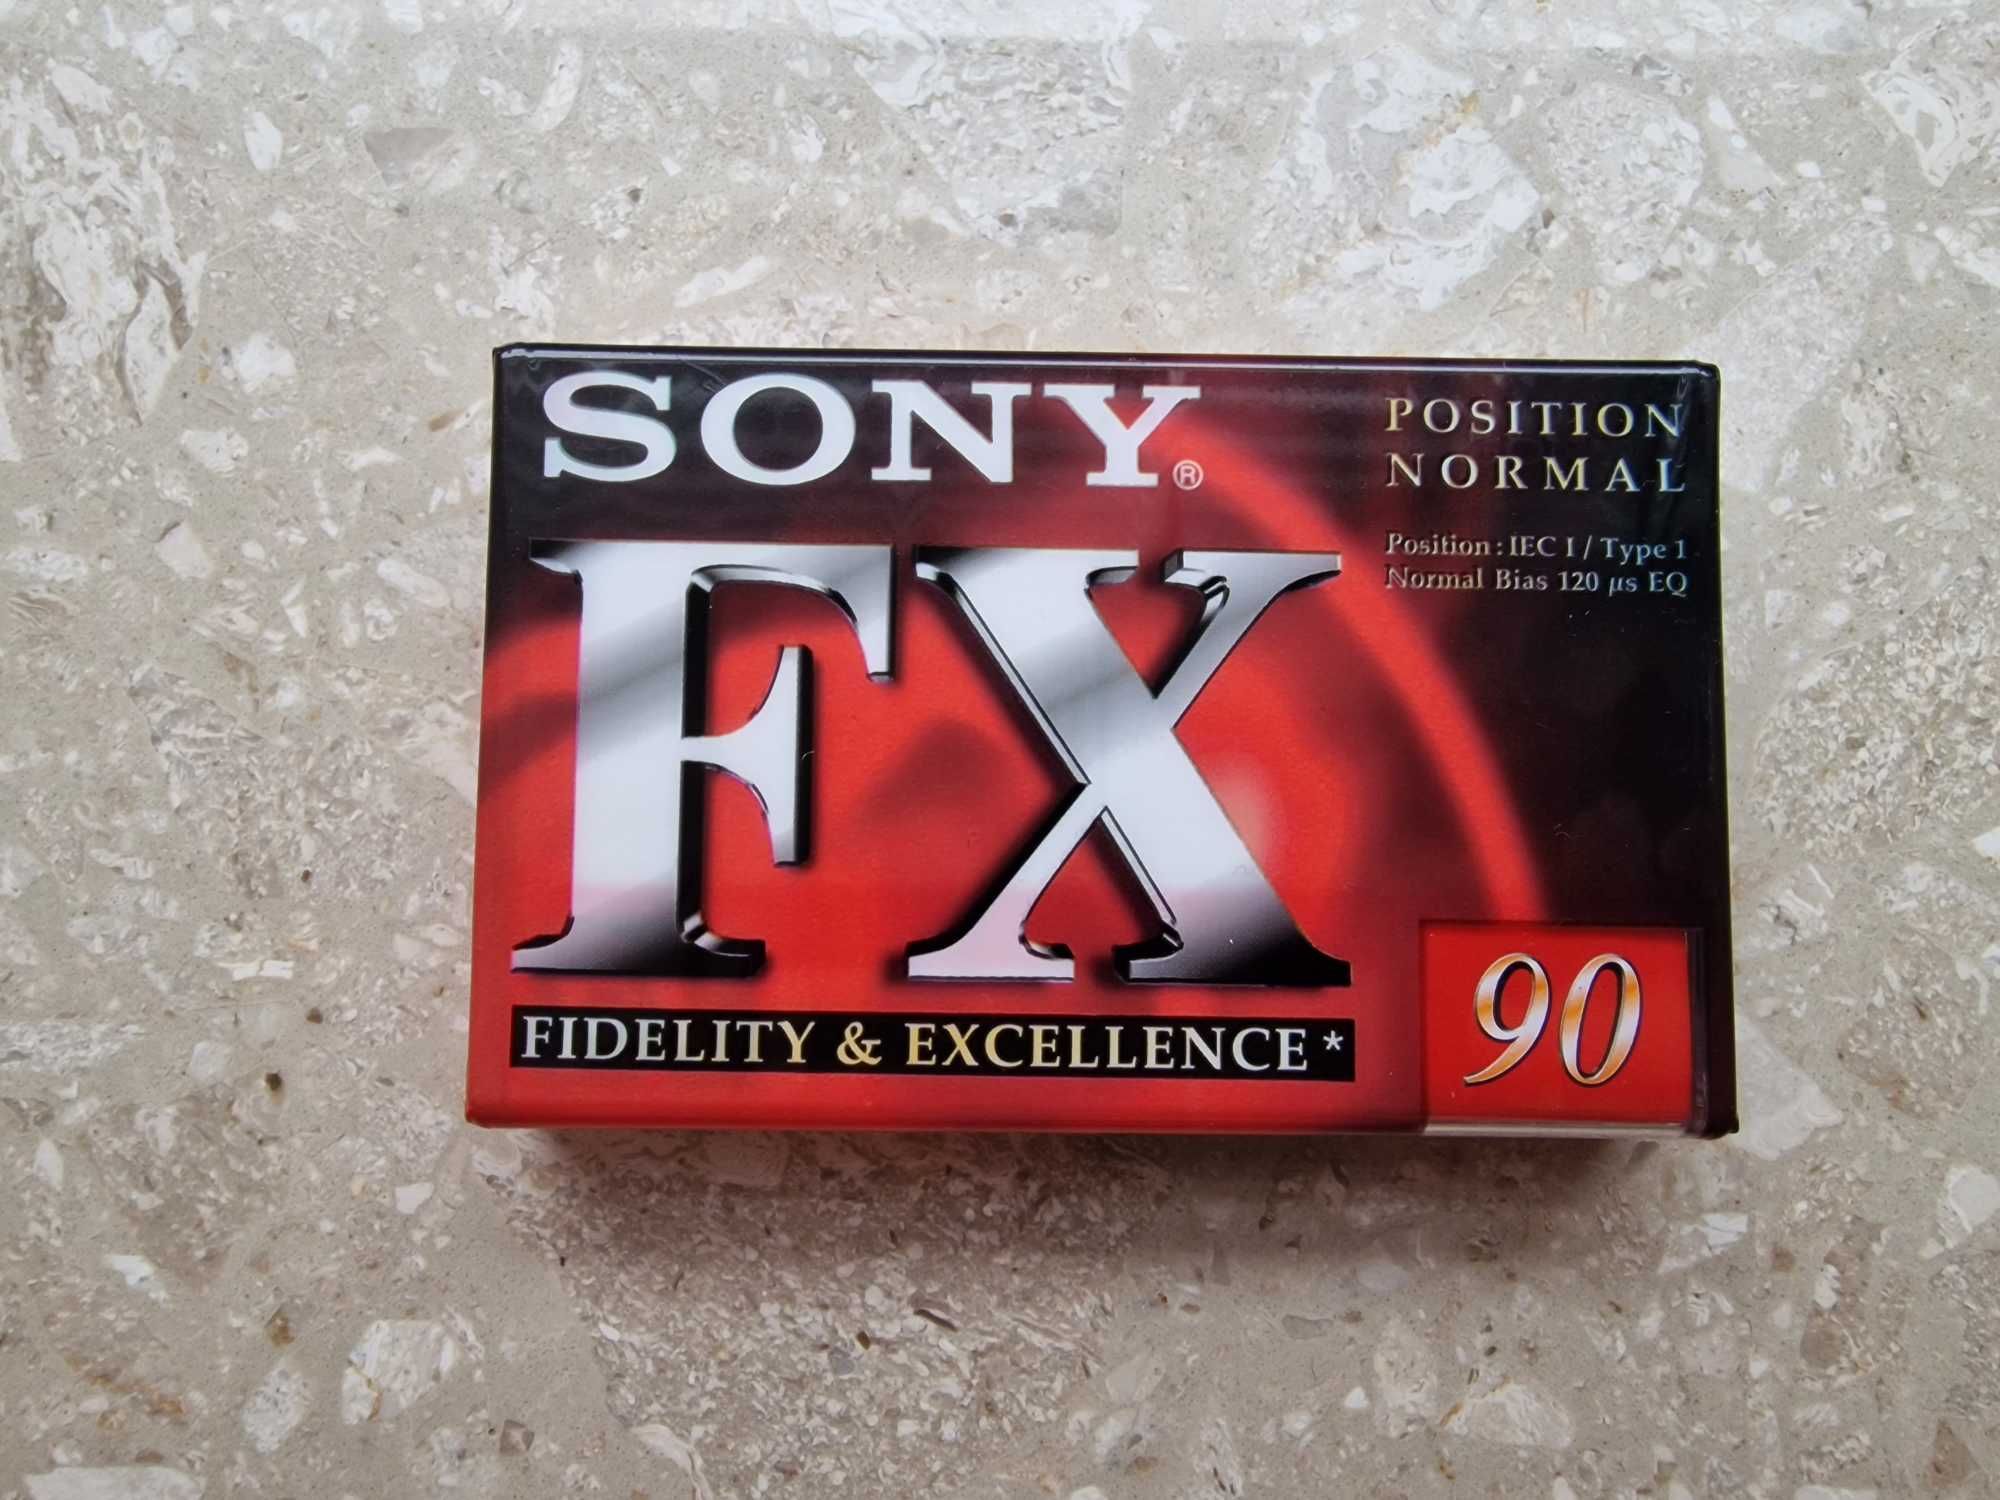 Sprzedam starą kasetę magnetofonową SONY FX 90min, z oryg. opakowaniem